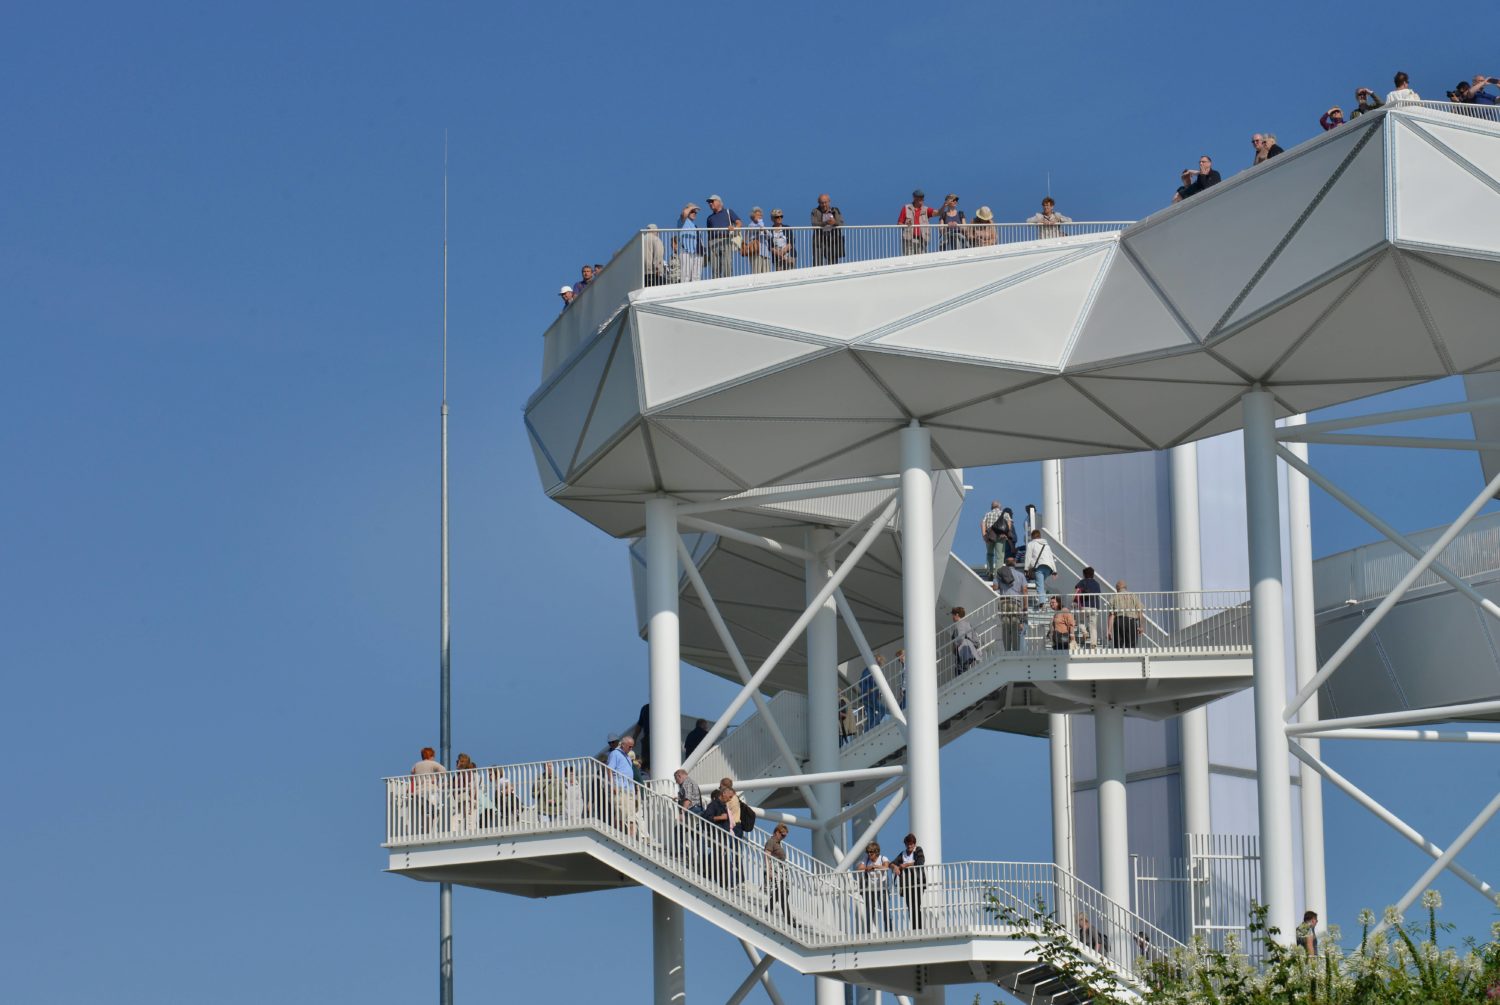 Wolkenhain heißt diese Anlage, die 120 Meter in den Himmel ragt. Von hier hat man einen tollen Blick auf die Gärten der Welt. Foto: Imago/Schöning 